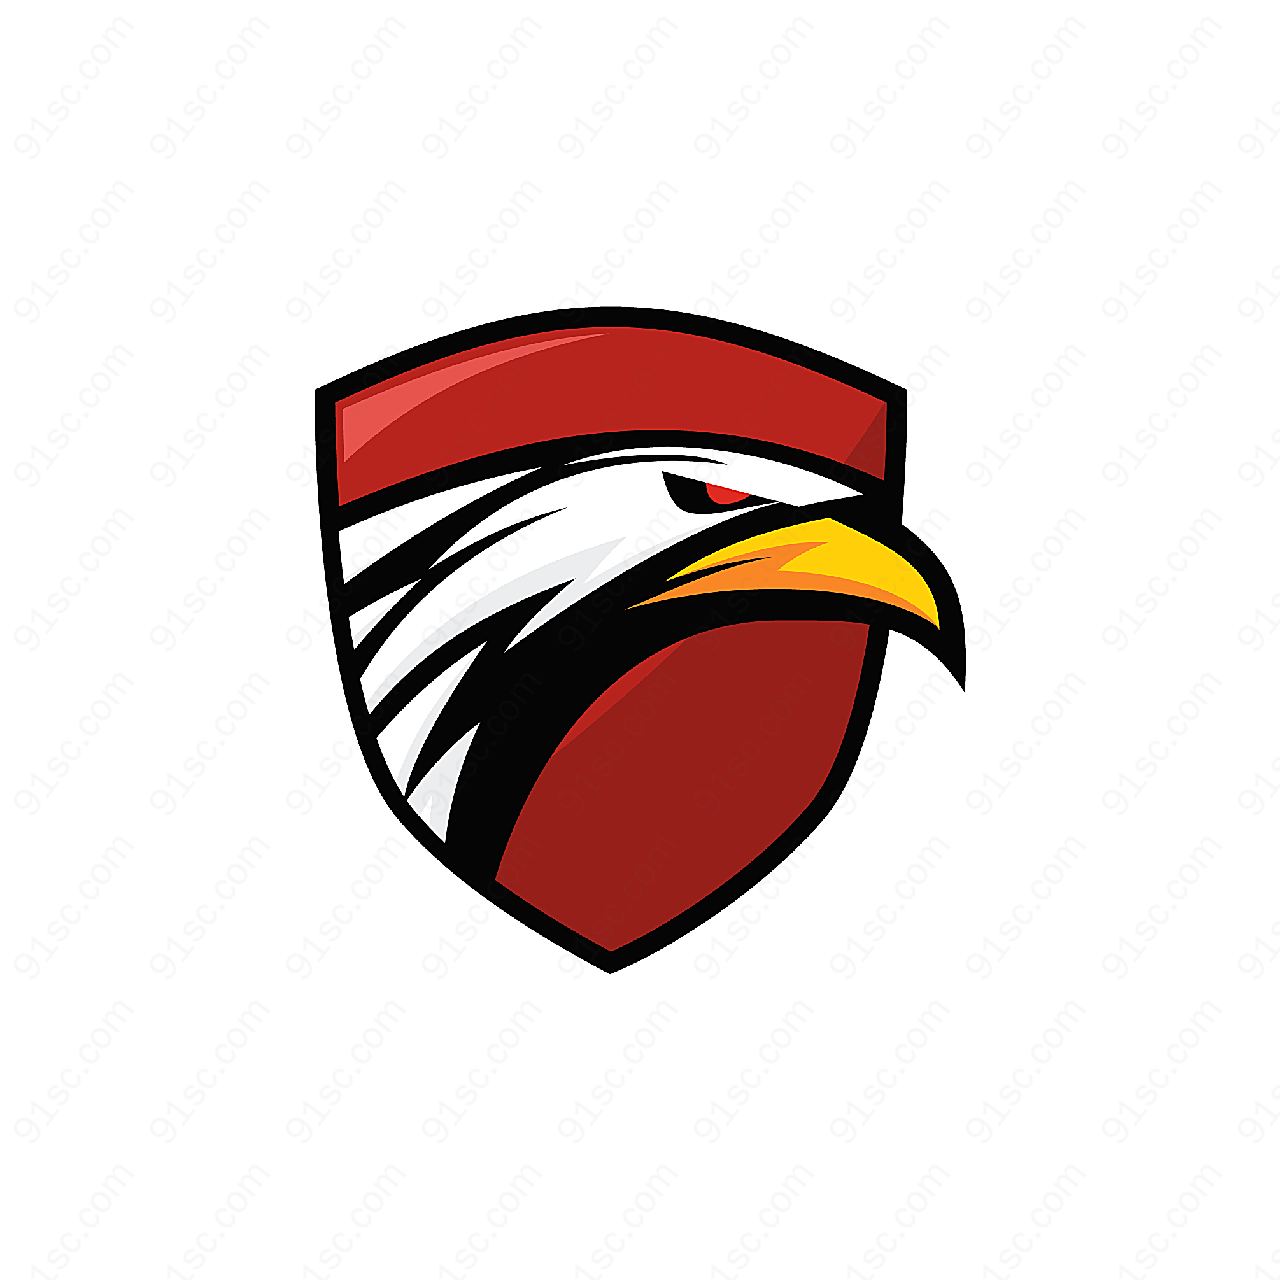 鹰标徽章标志矢量logo图形